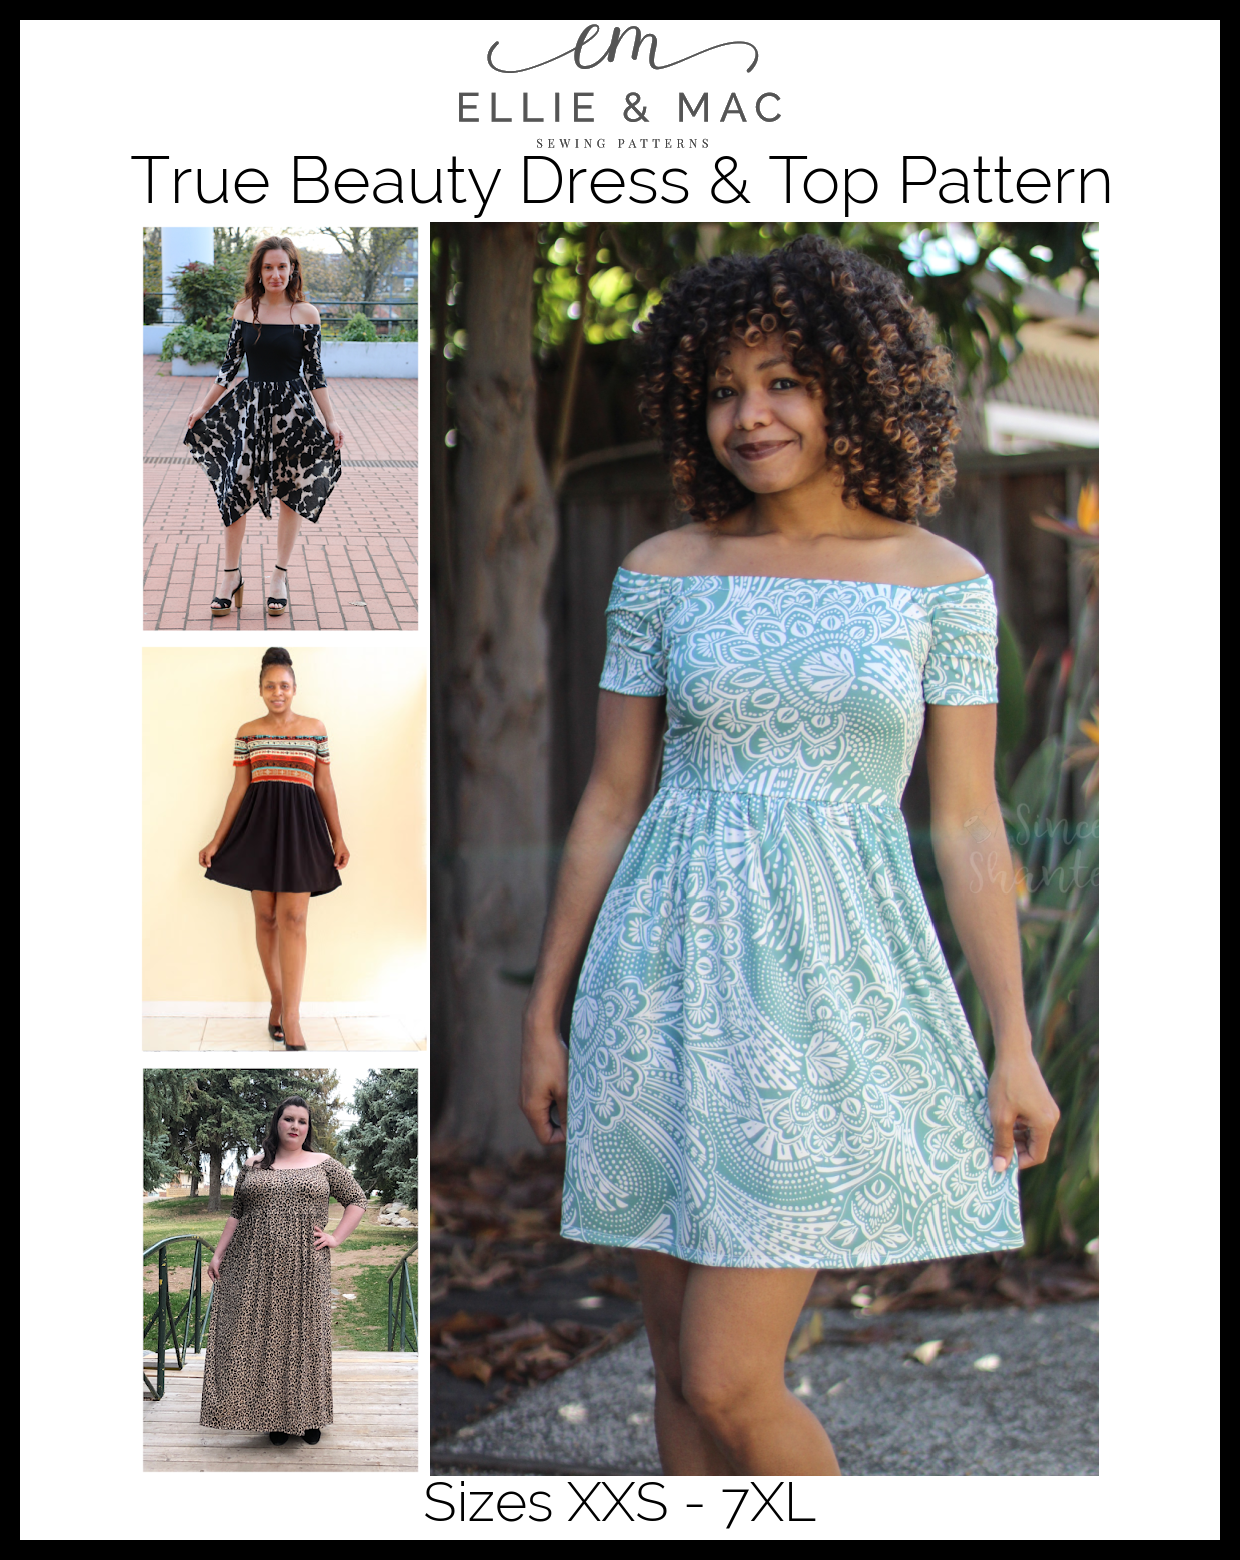 True Beauty Dress & Top Pattern